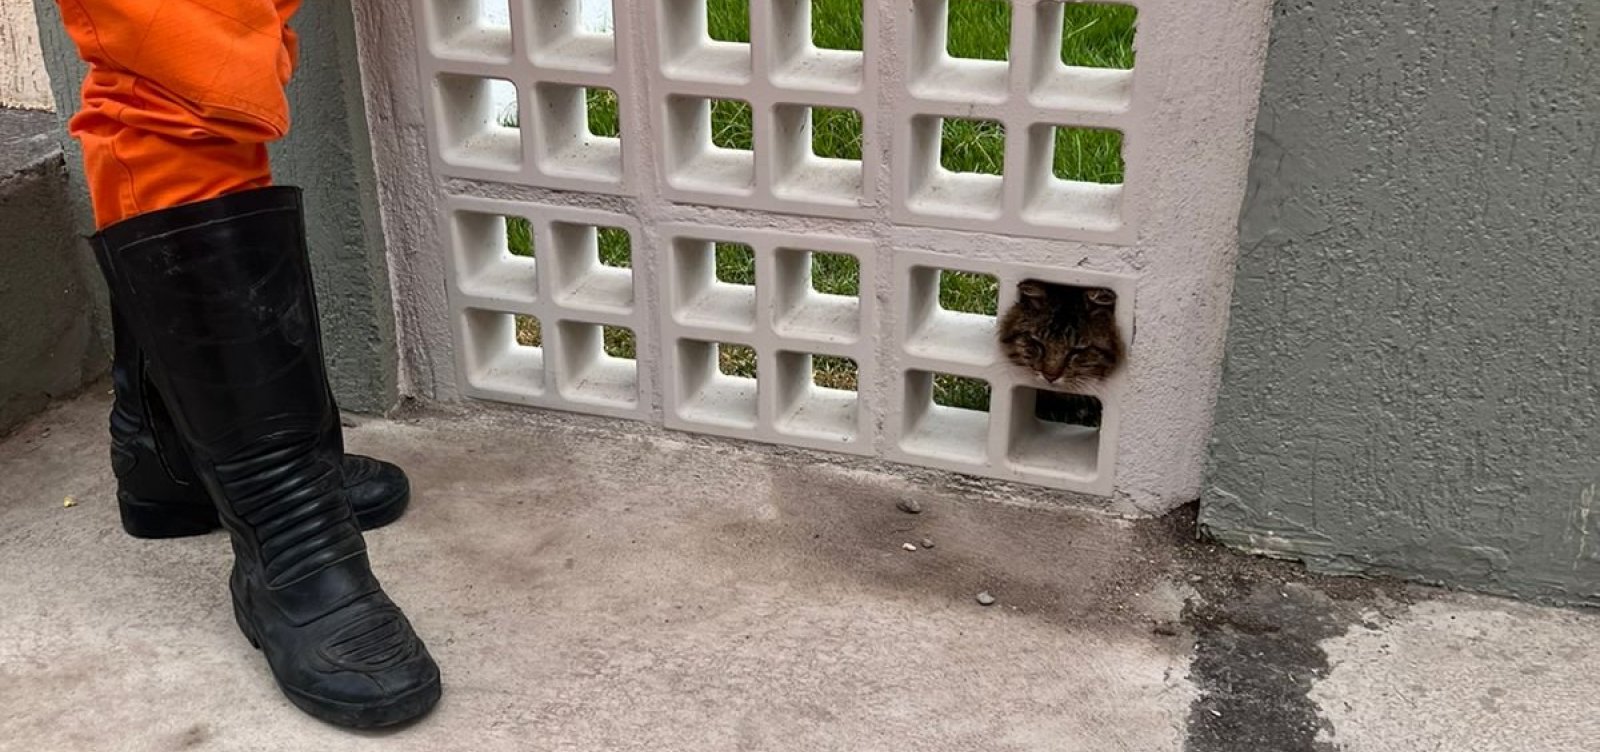 Bombeiros de Eunápolis resgatam gato que prendeu cabeça em muro